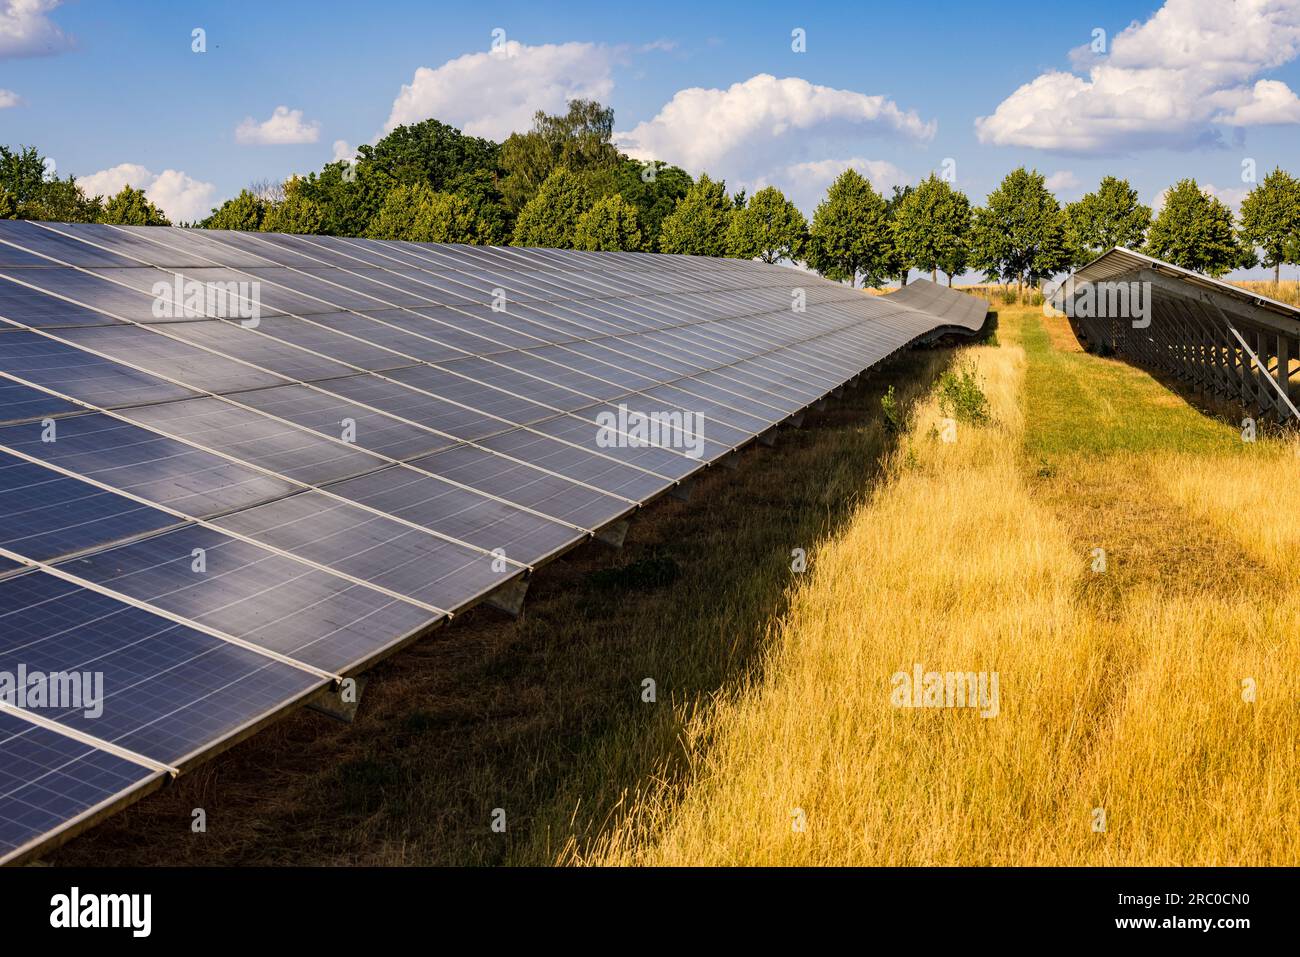 Viele Reihen von Solarmodulen eines Solarkraftwerkes zur Erzeugung von regenerativem Strom, Allemagne Banque D'Images